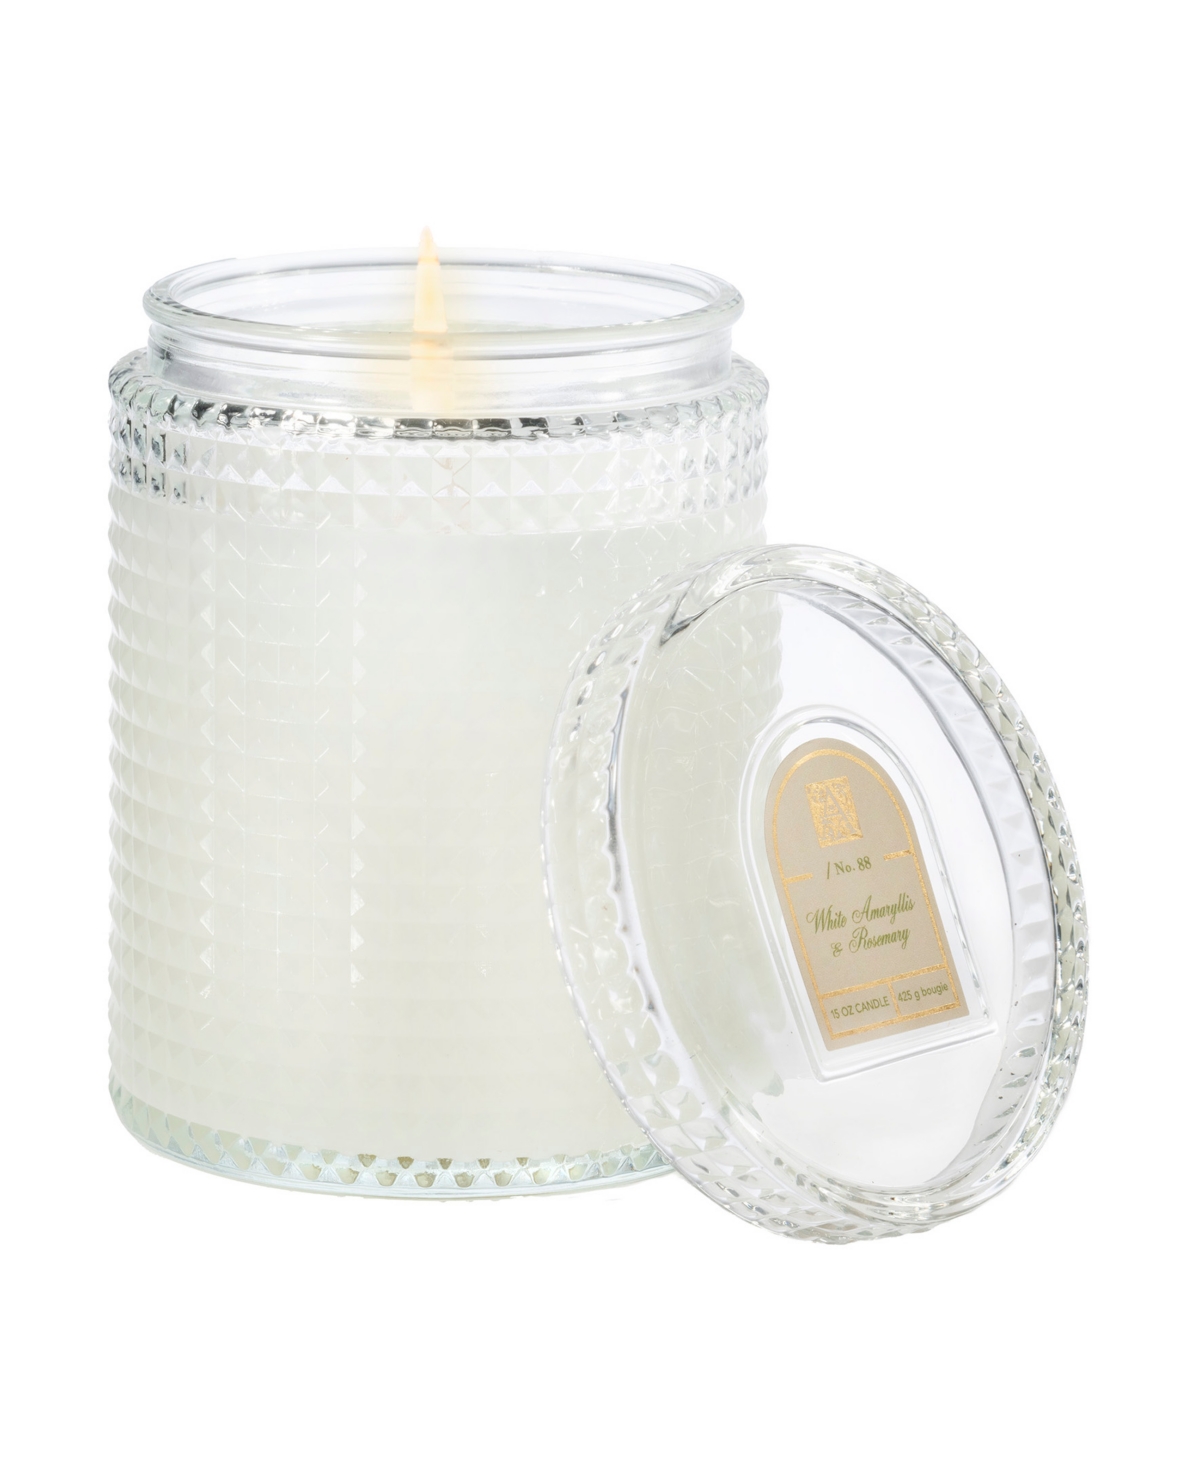 Amaryllis Rosemary Textured Glass Candle, 15 oz - White